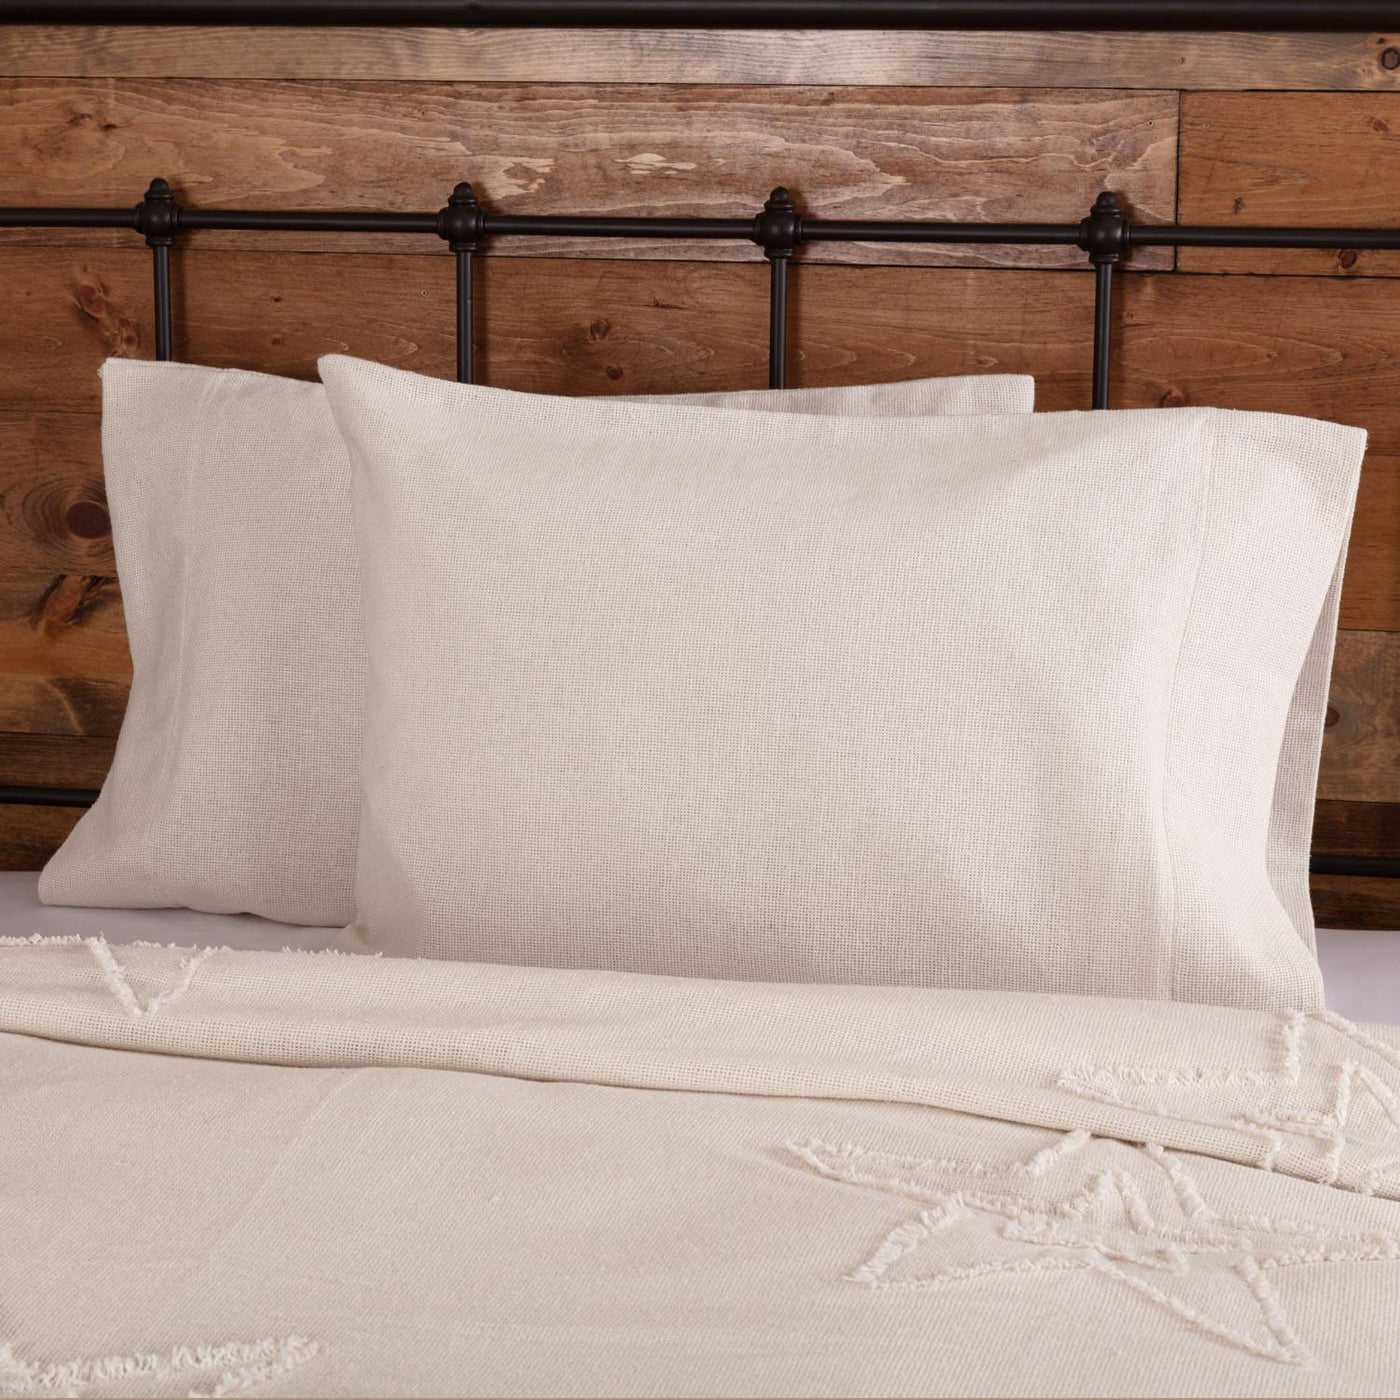 Athol Standard Pillow Case - White - Set of 2